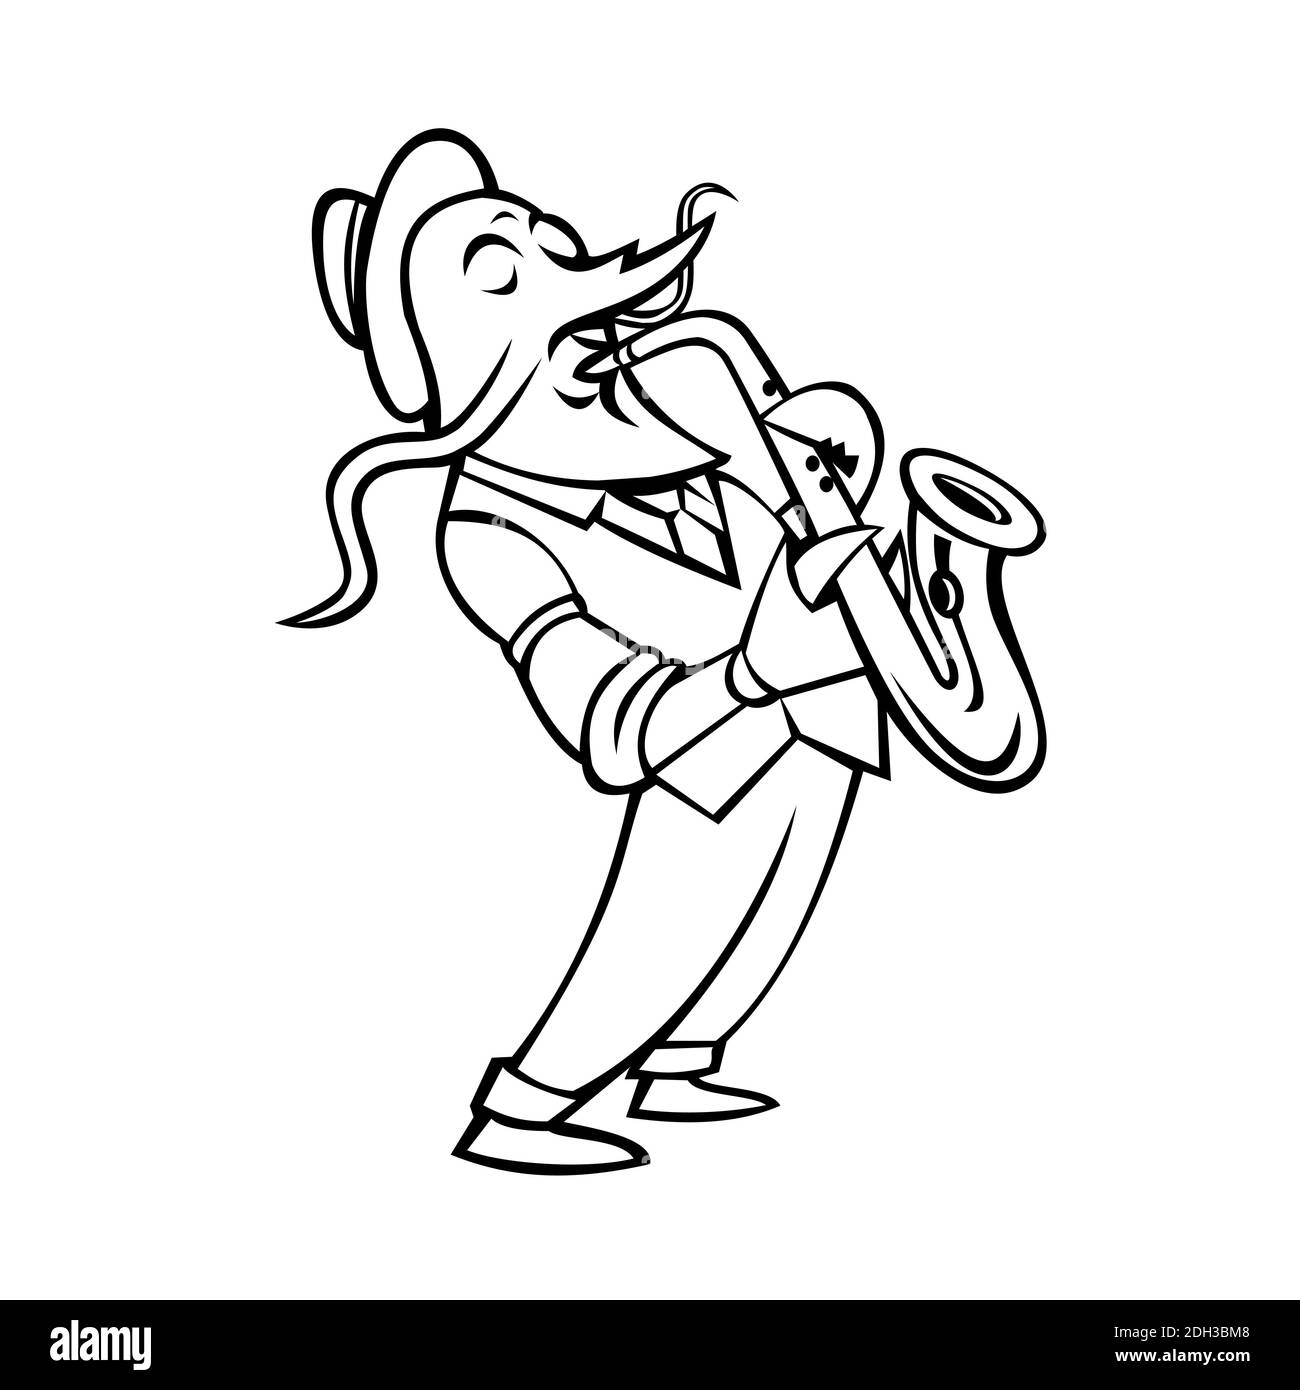 Crawfish Saxophone Player Mascot Black and White Stock Photo